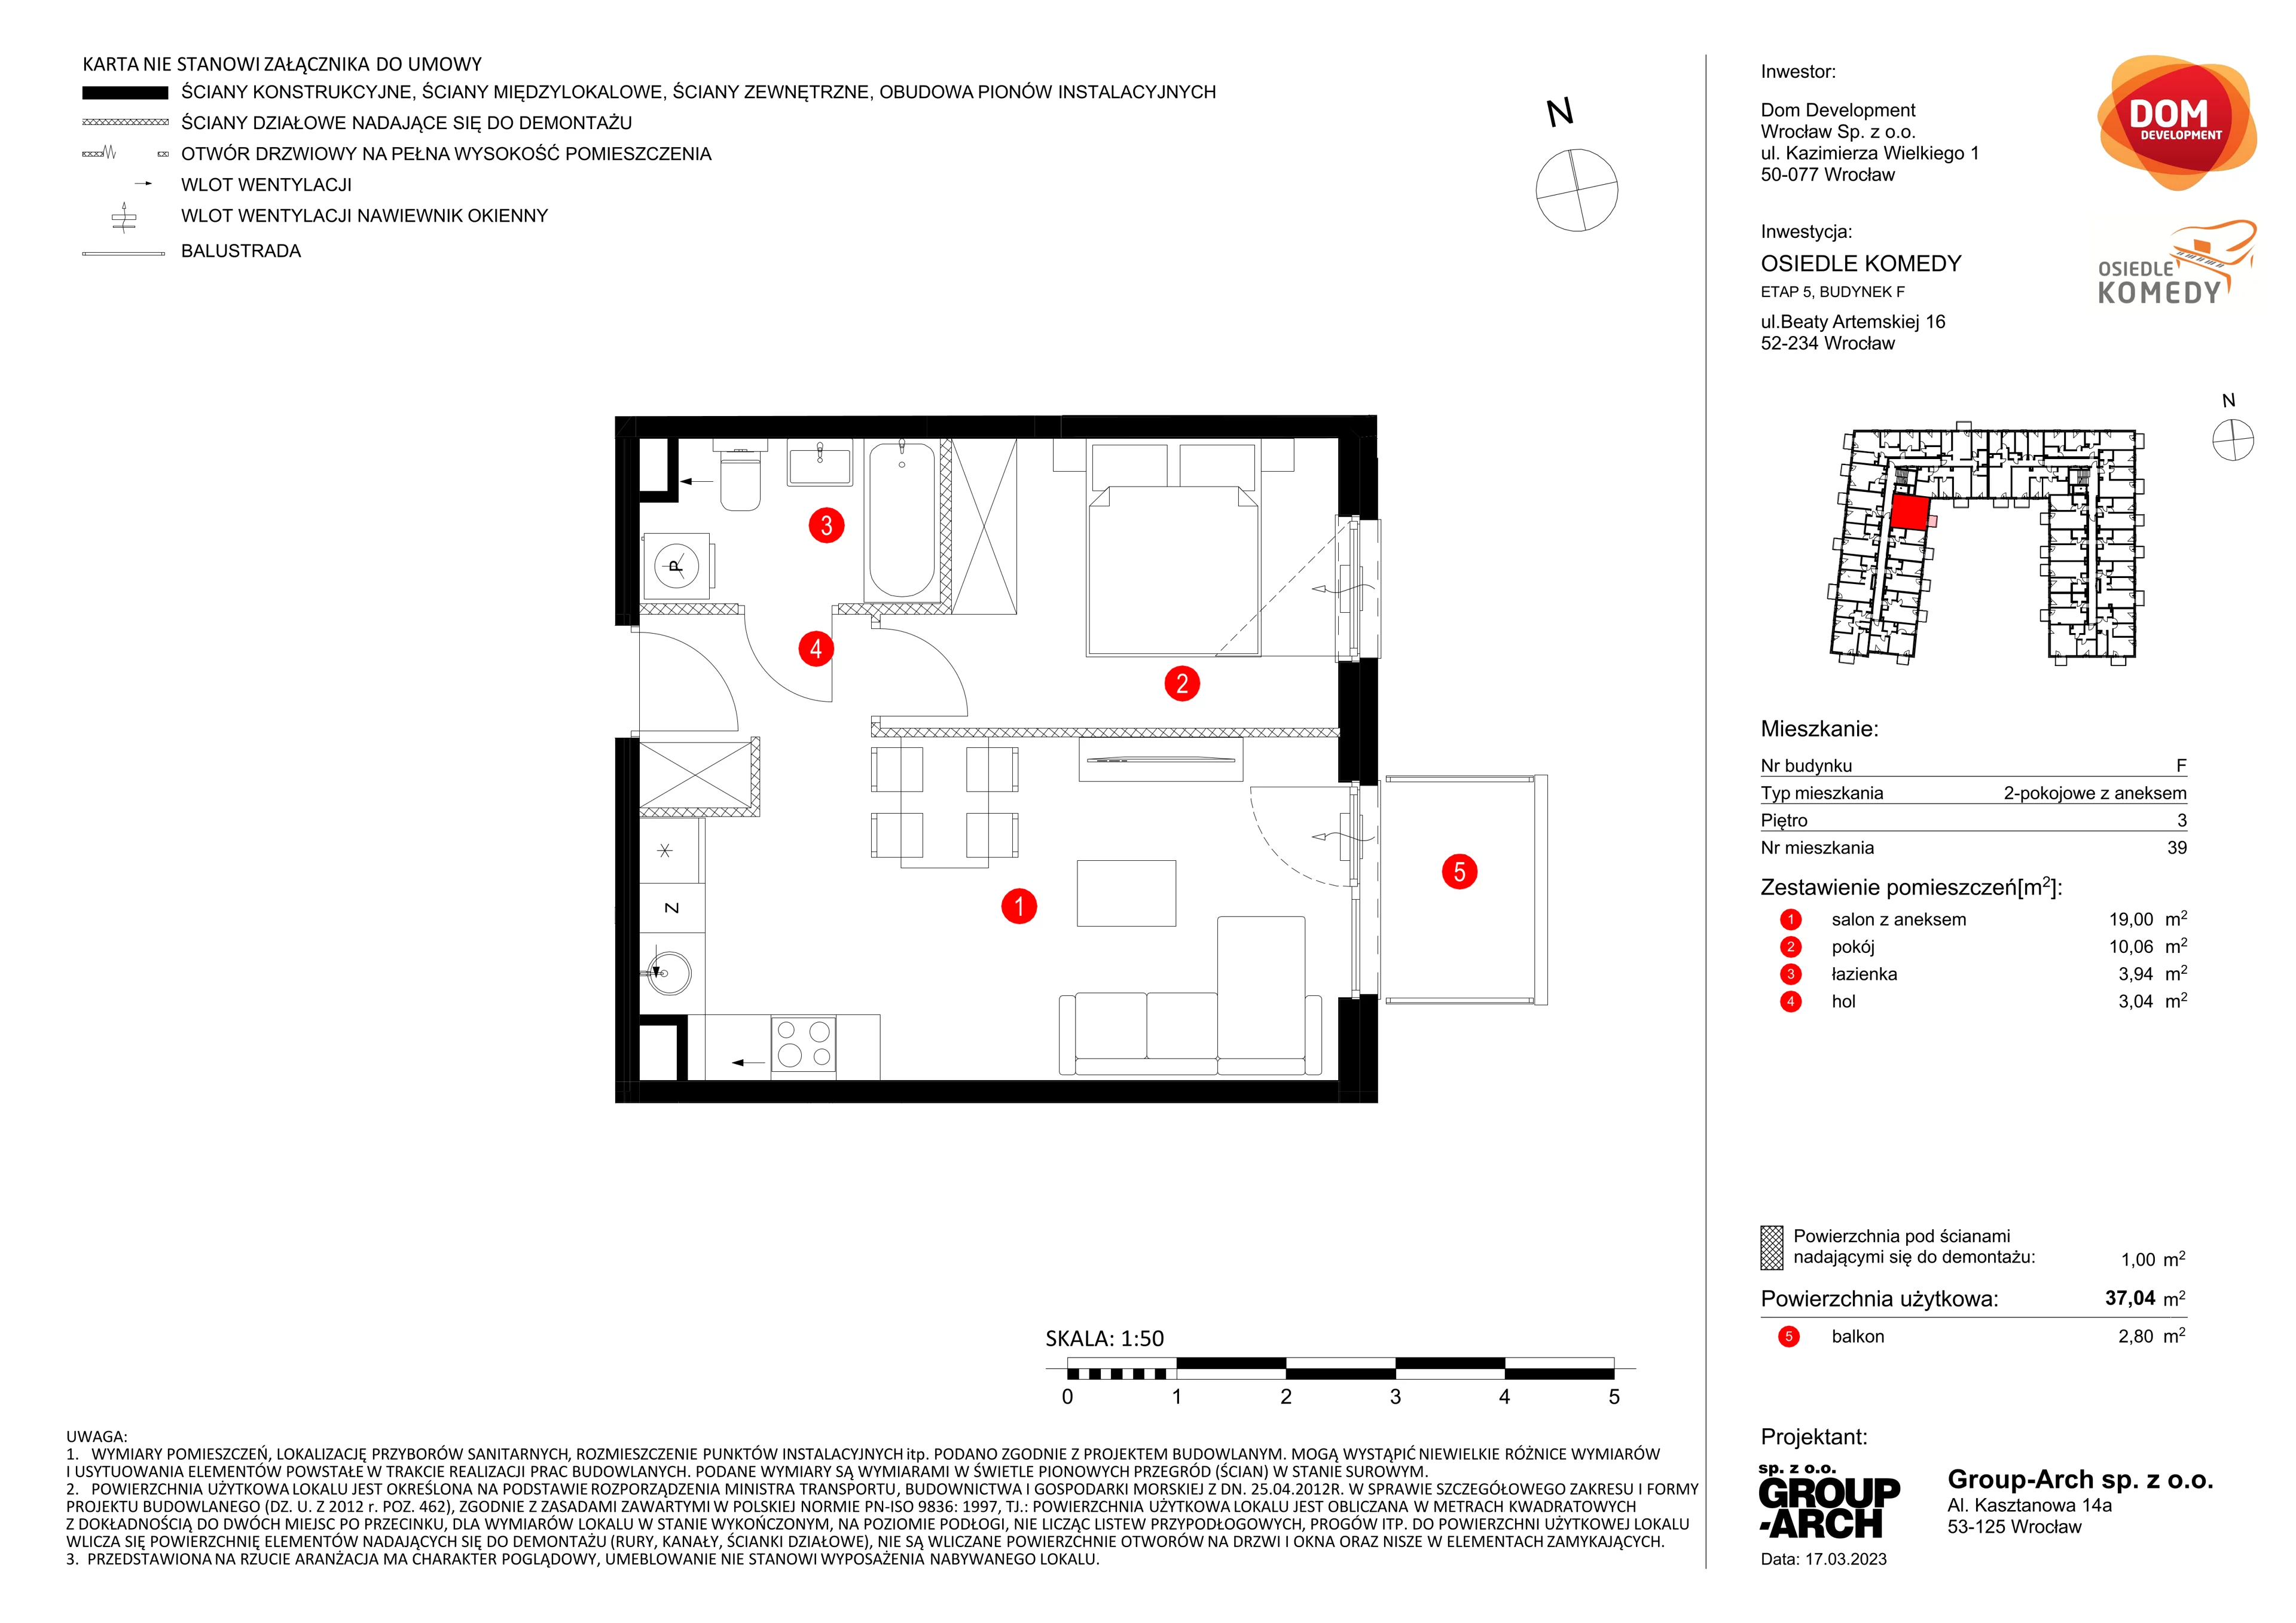 Mieszkanie 37,04 m², piętro 3, oferta nr F/39, Osiedle Komedy, Wrocław, Jagodno, Krzyki, ul. Komedy 1B